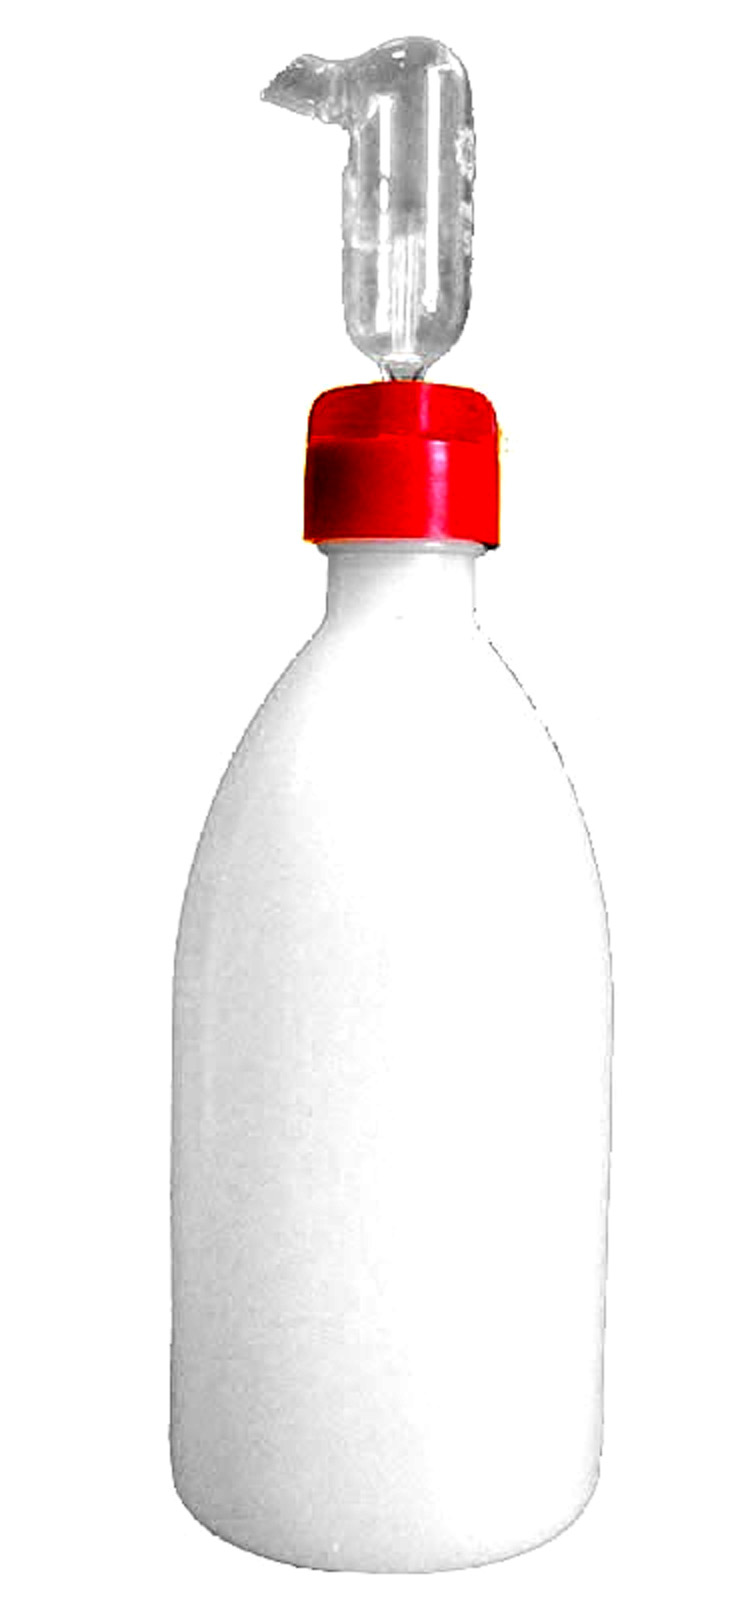 pompa per bottiglie da 1000 ml chiusura a sfera in vetro per tutte le bottiglie 2 pompe 2 dosatori da 1 l Sports chiusura ermetica con garanzia di lunga durata C.P 